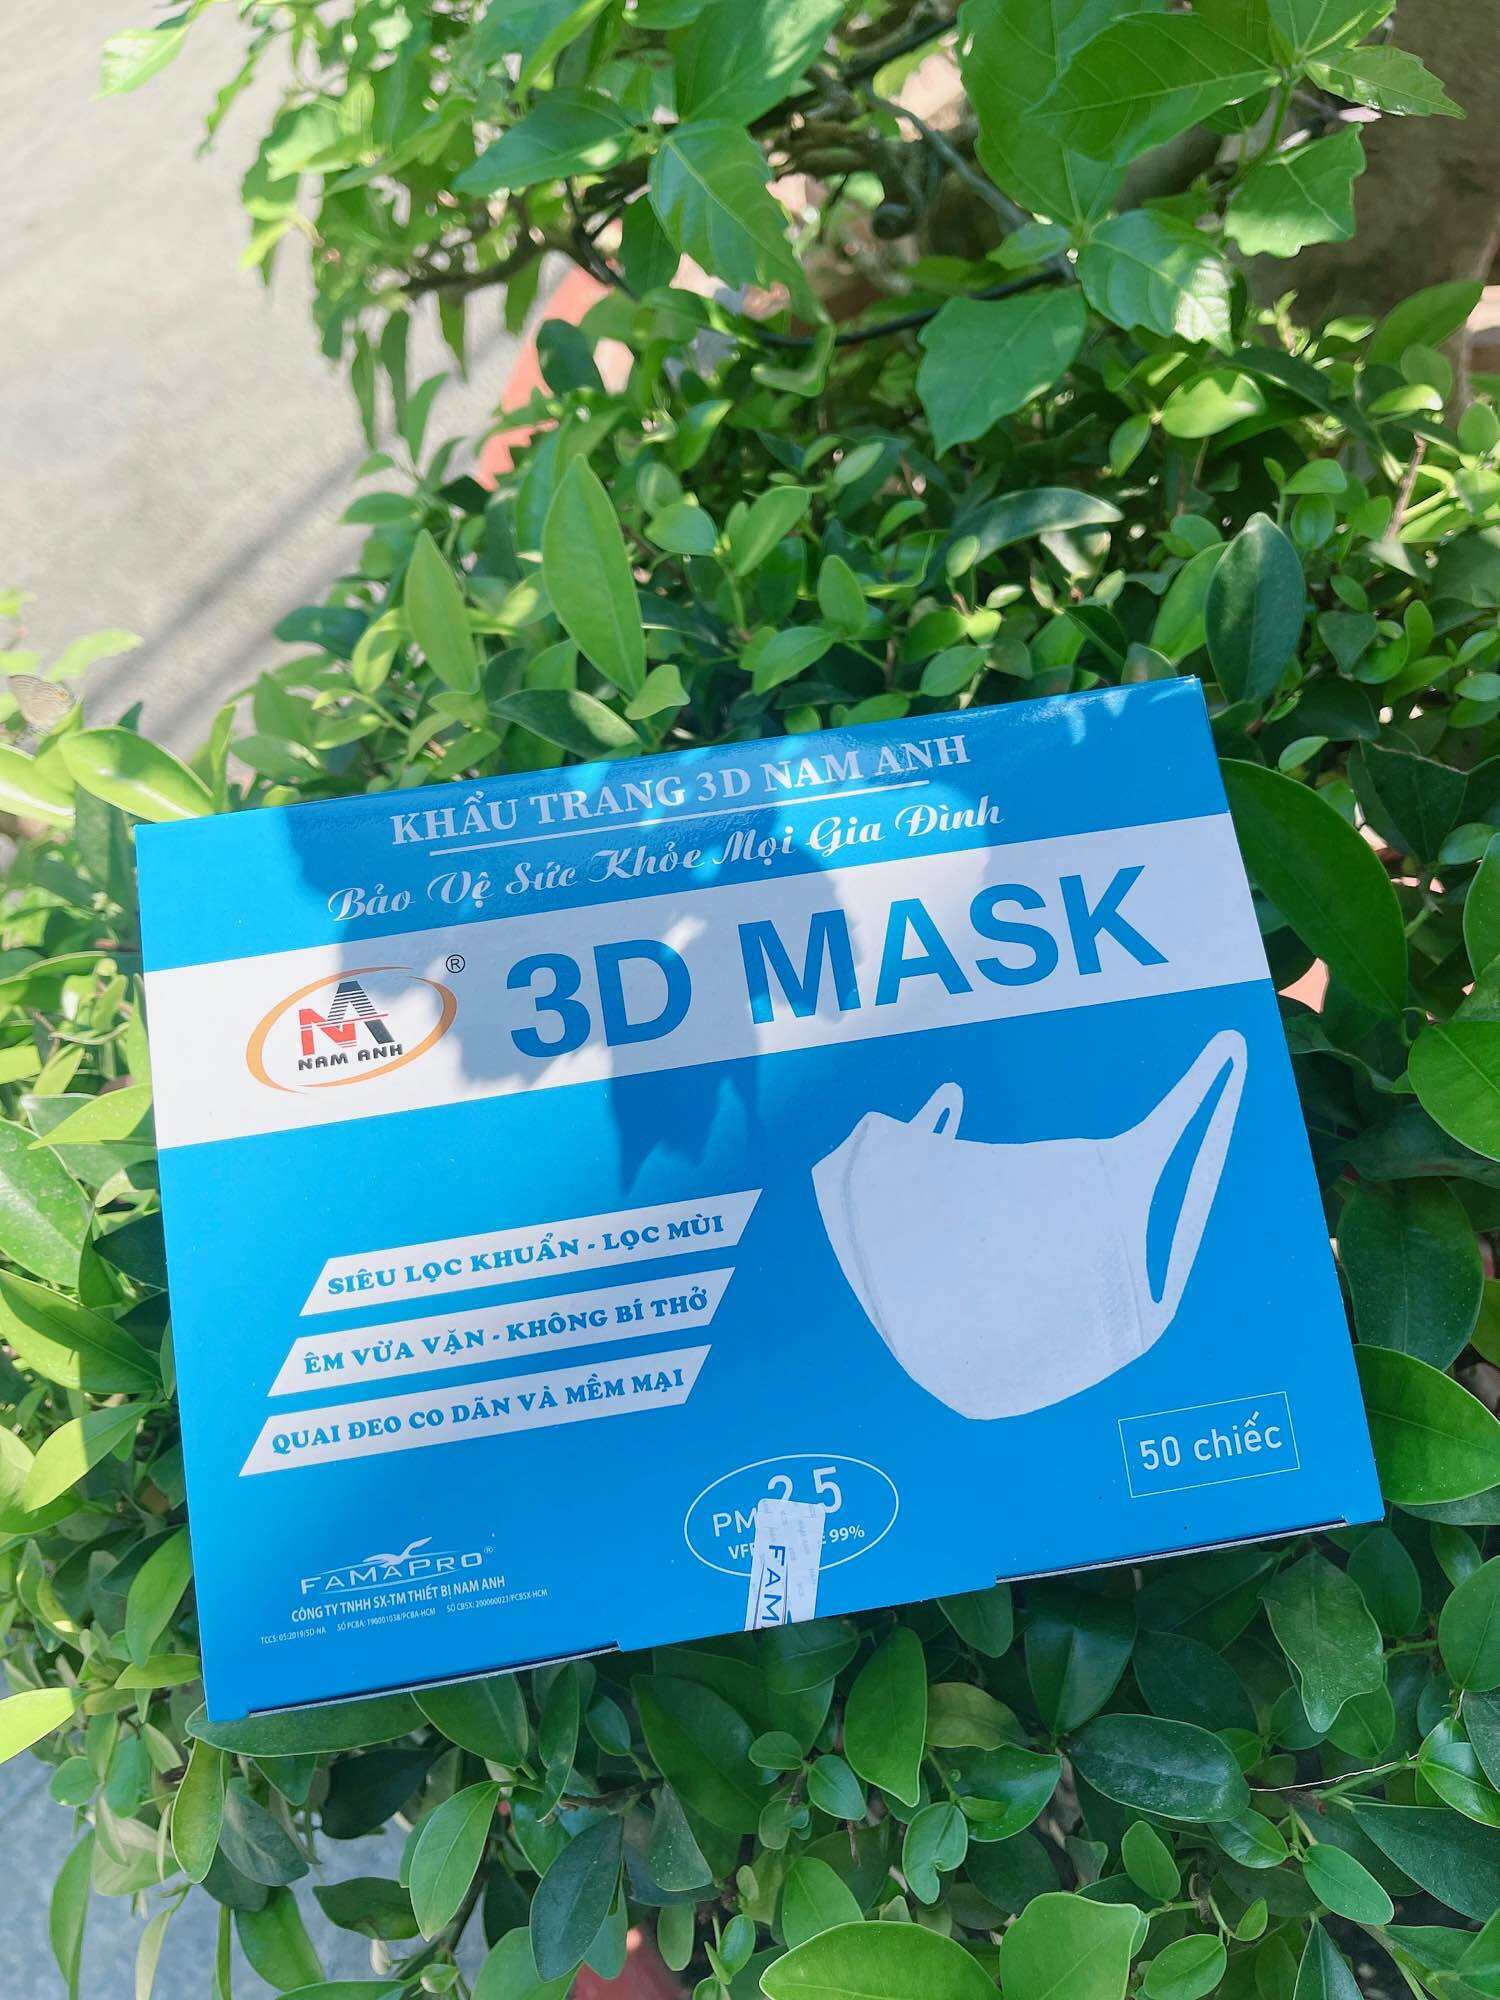 HỘP 50 KHẨU TRANG 3D Mask Nam Anh Famapro ,SẢN PHẨM CHÍNH HÃNG, ÊM NHẸ, THOẢI MÁI, DỄ CHỊU